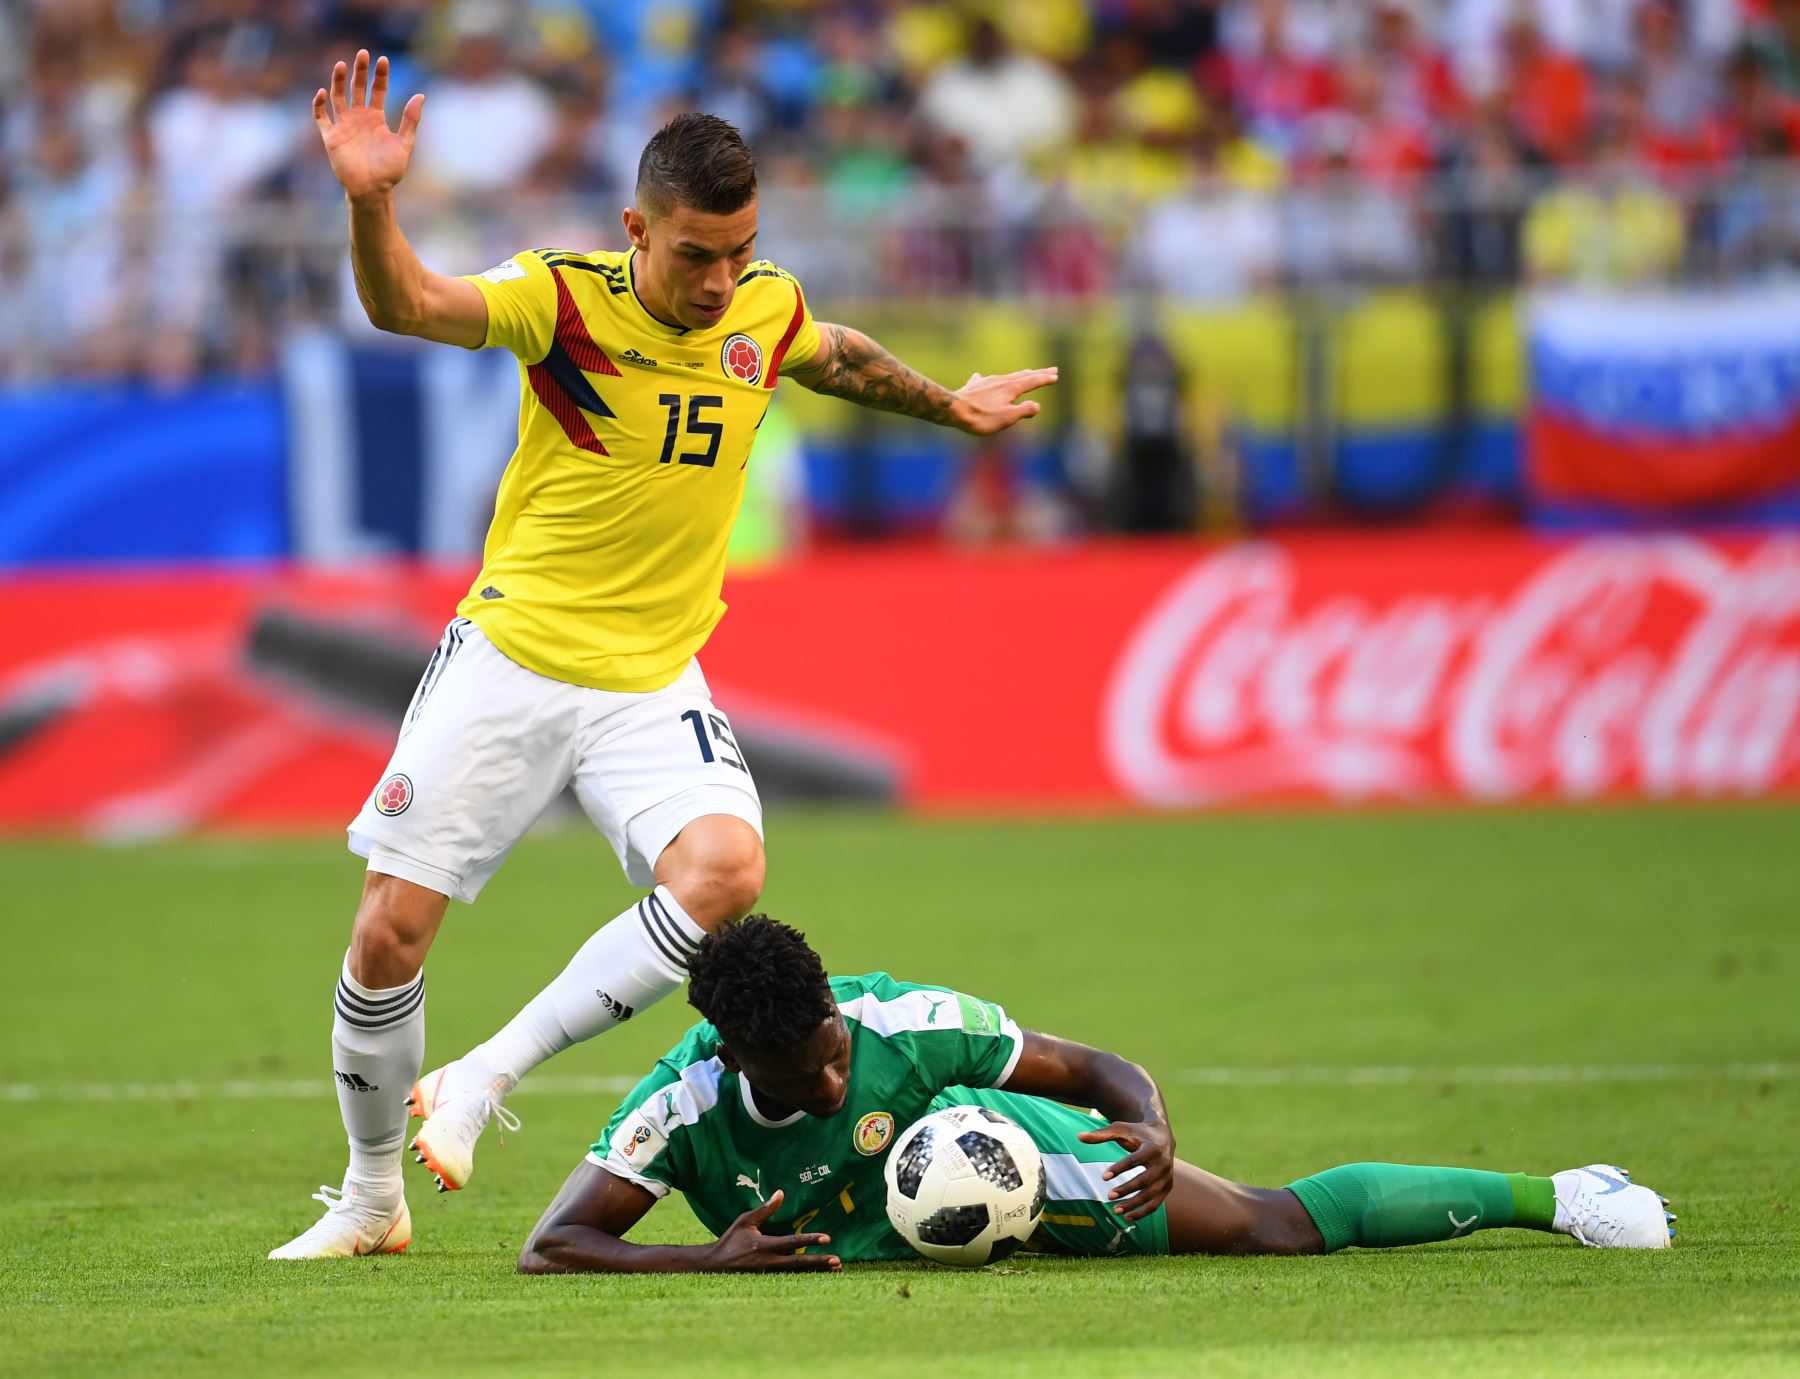 El centrocampista colombiano Mateus Uribe (L) compite por el balón con el defensor Lamine Gassama de Senegal durante el partido de fútbol Rusia 2018 Grupo H entre Senegal y Colombia en el Samara Arena en Samara el 28 de junio de 2018. / AFP